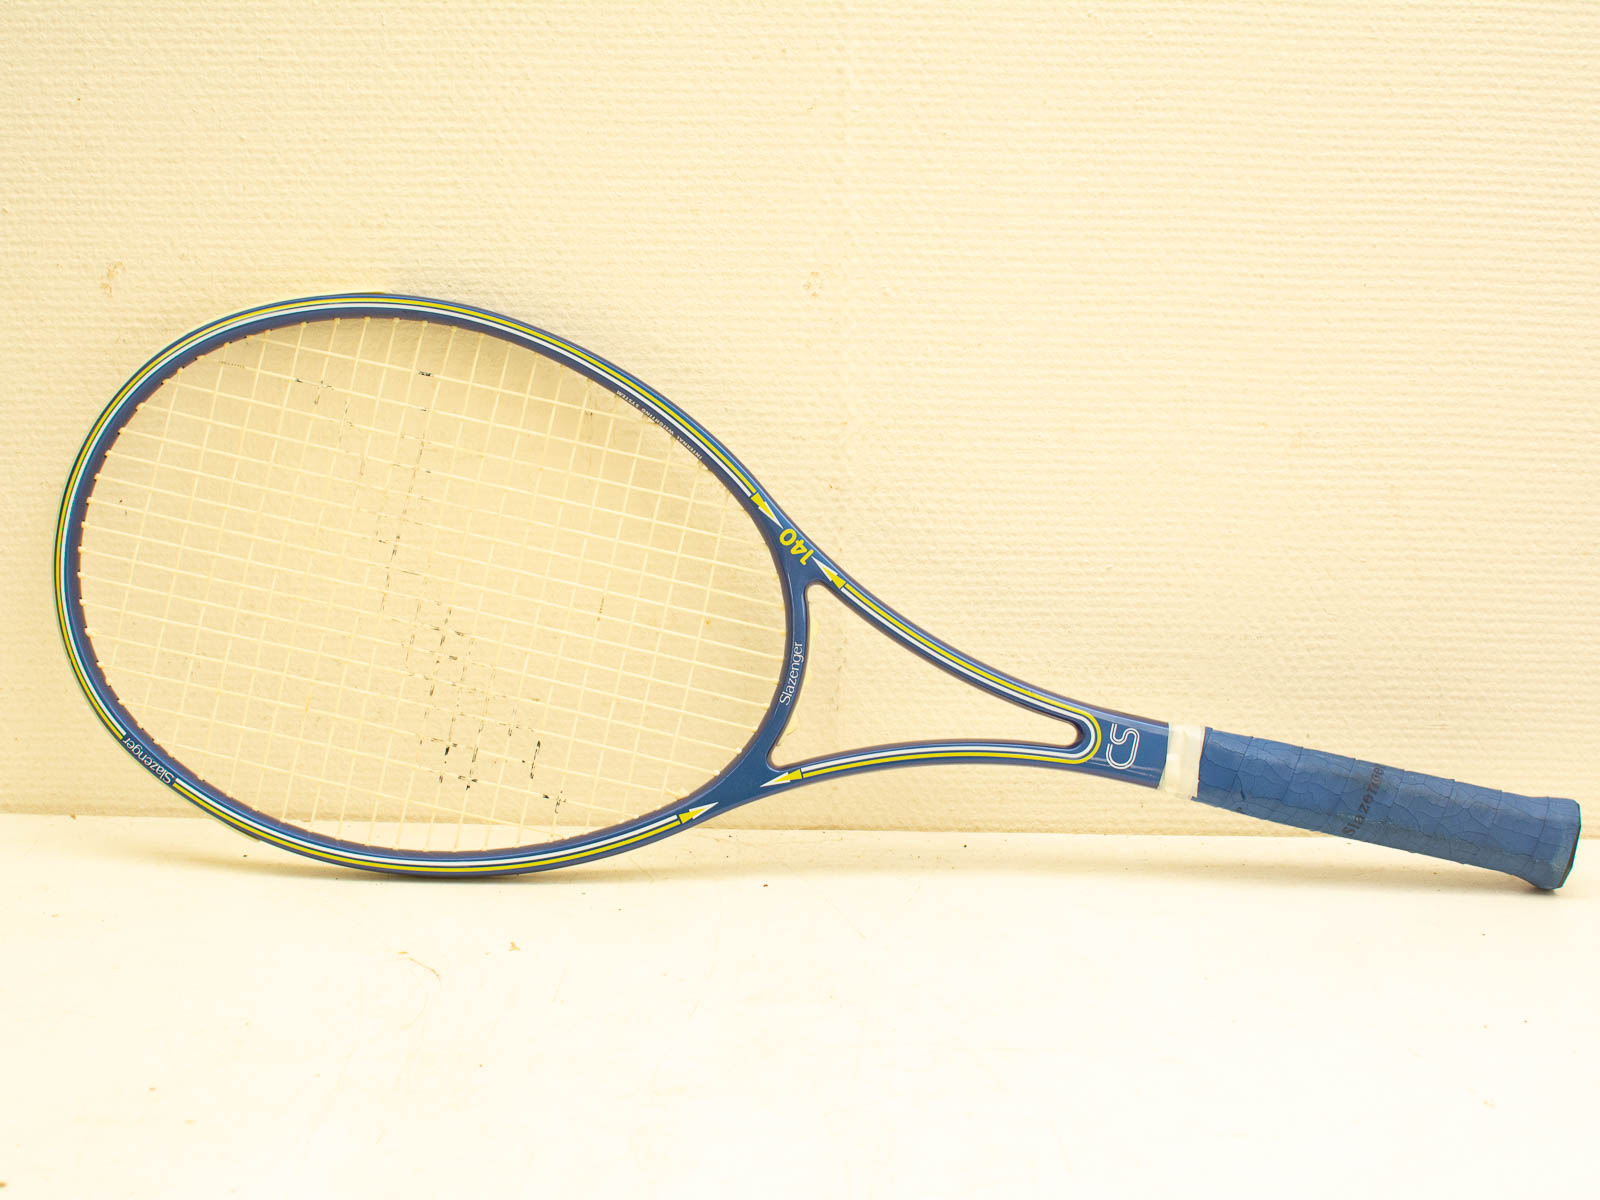 slazenger cs 140 tennis racket  32322